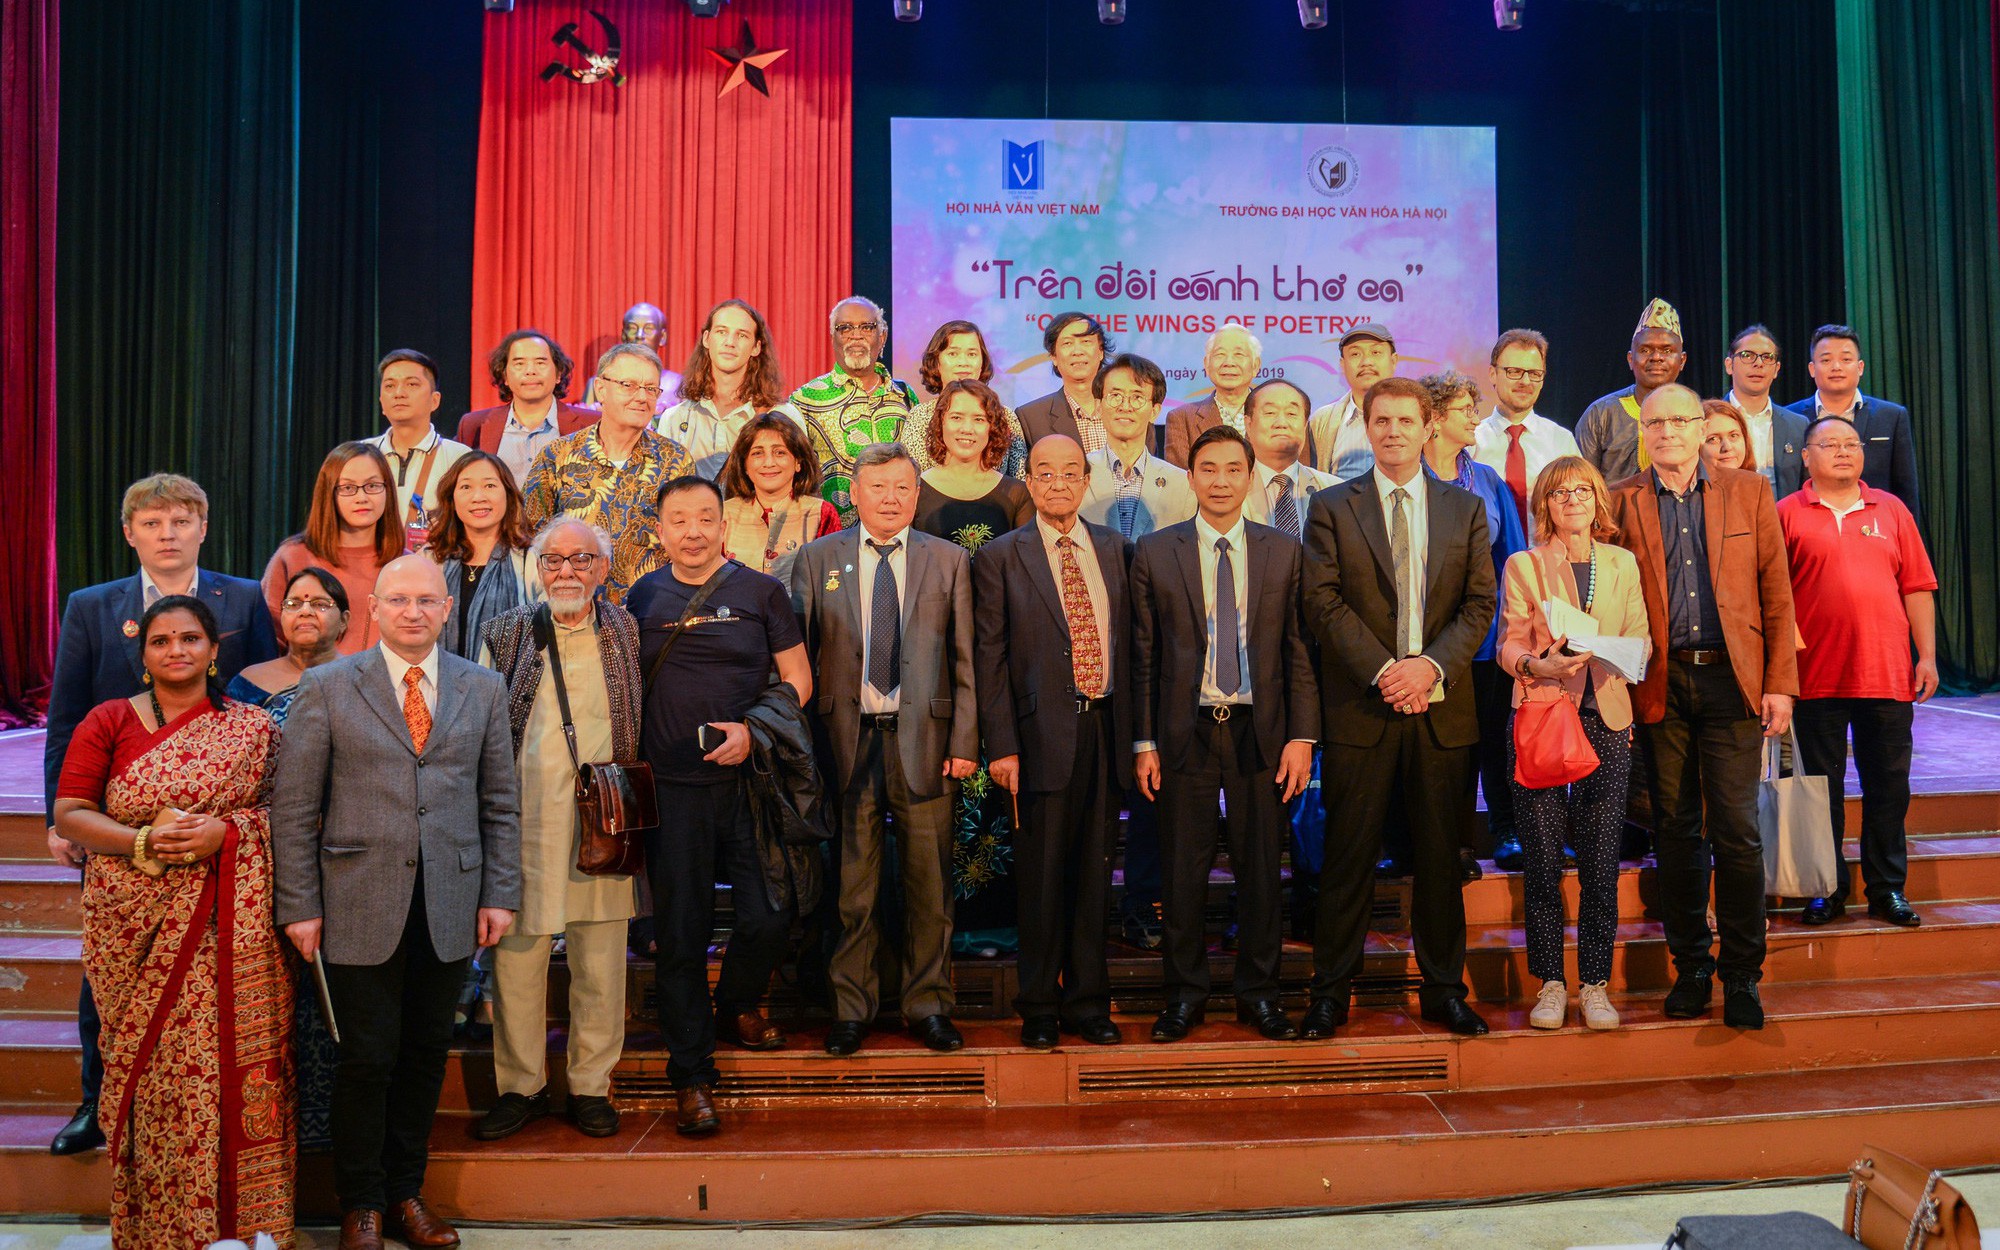 Đại học Văn hóa Hà Nội: Giao lưu với các nhà thơ quốc tế